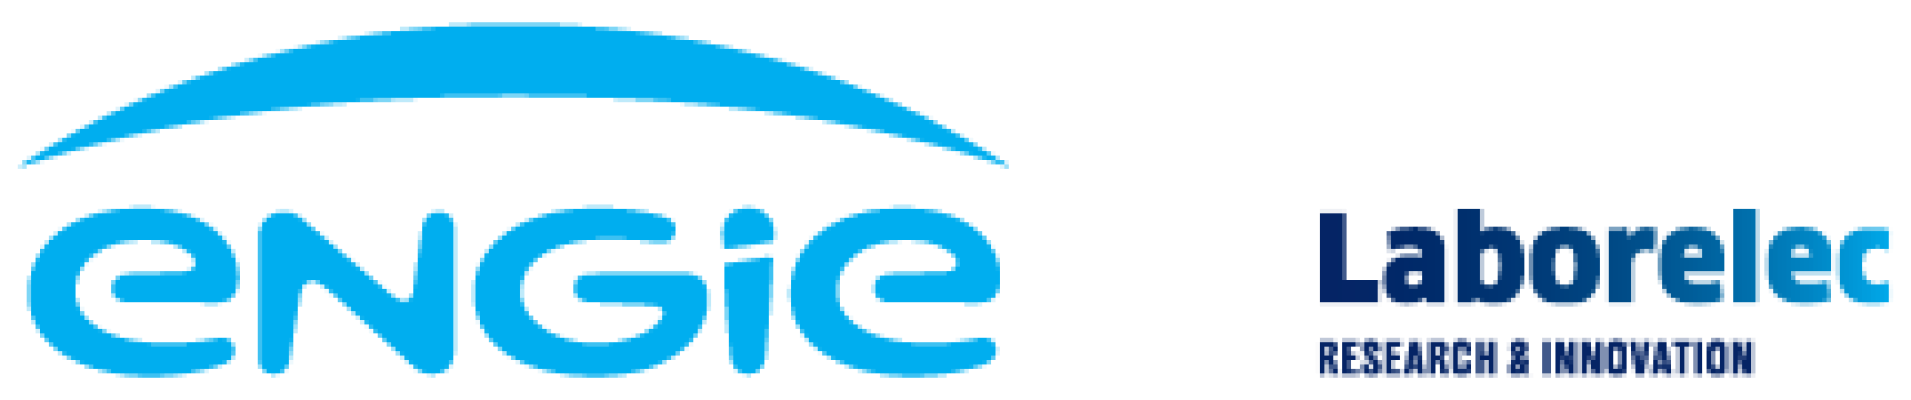 Engie Laborelec nieuw logo